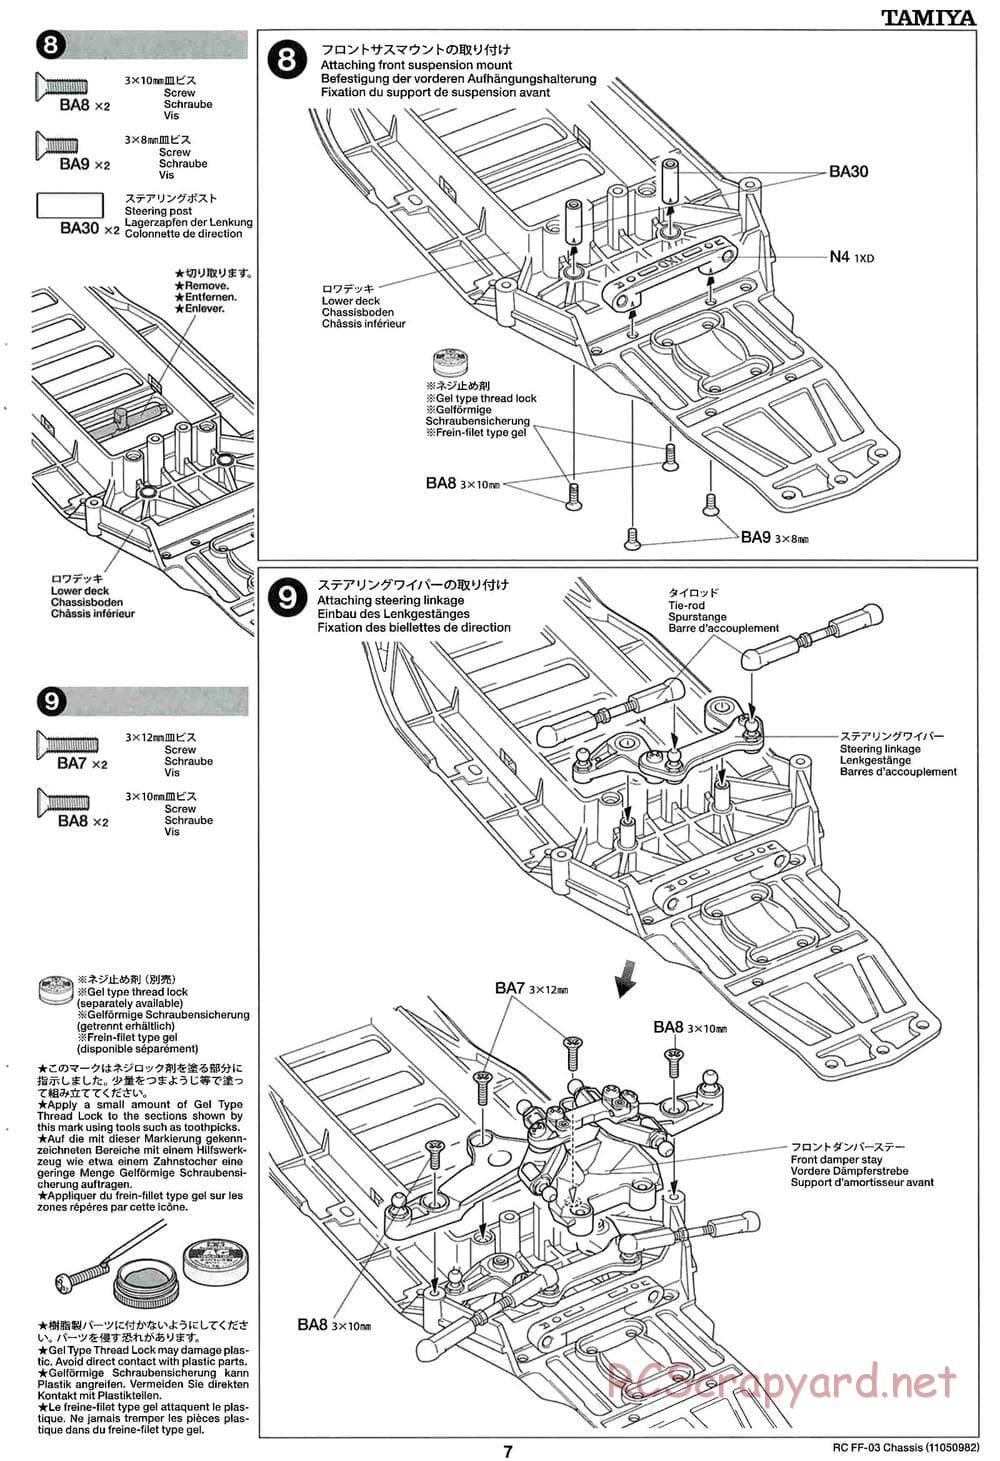 Tamiya - Honda CR-Z - FF-03 Chassis - Manual - Page 7